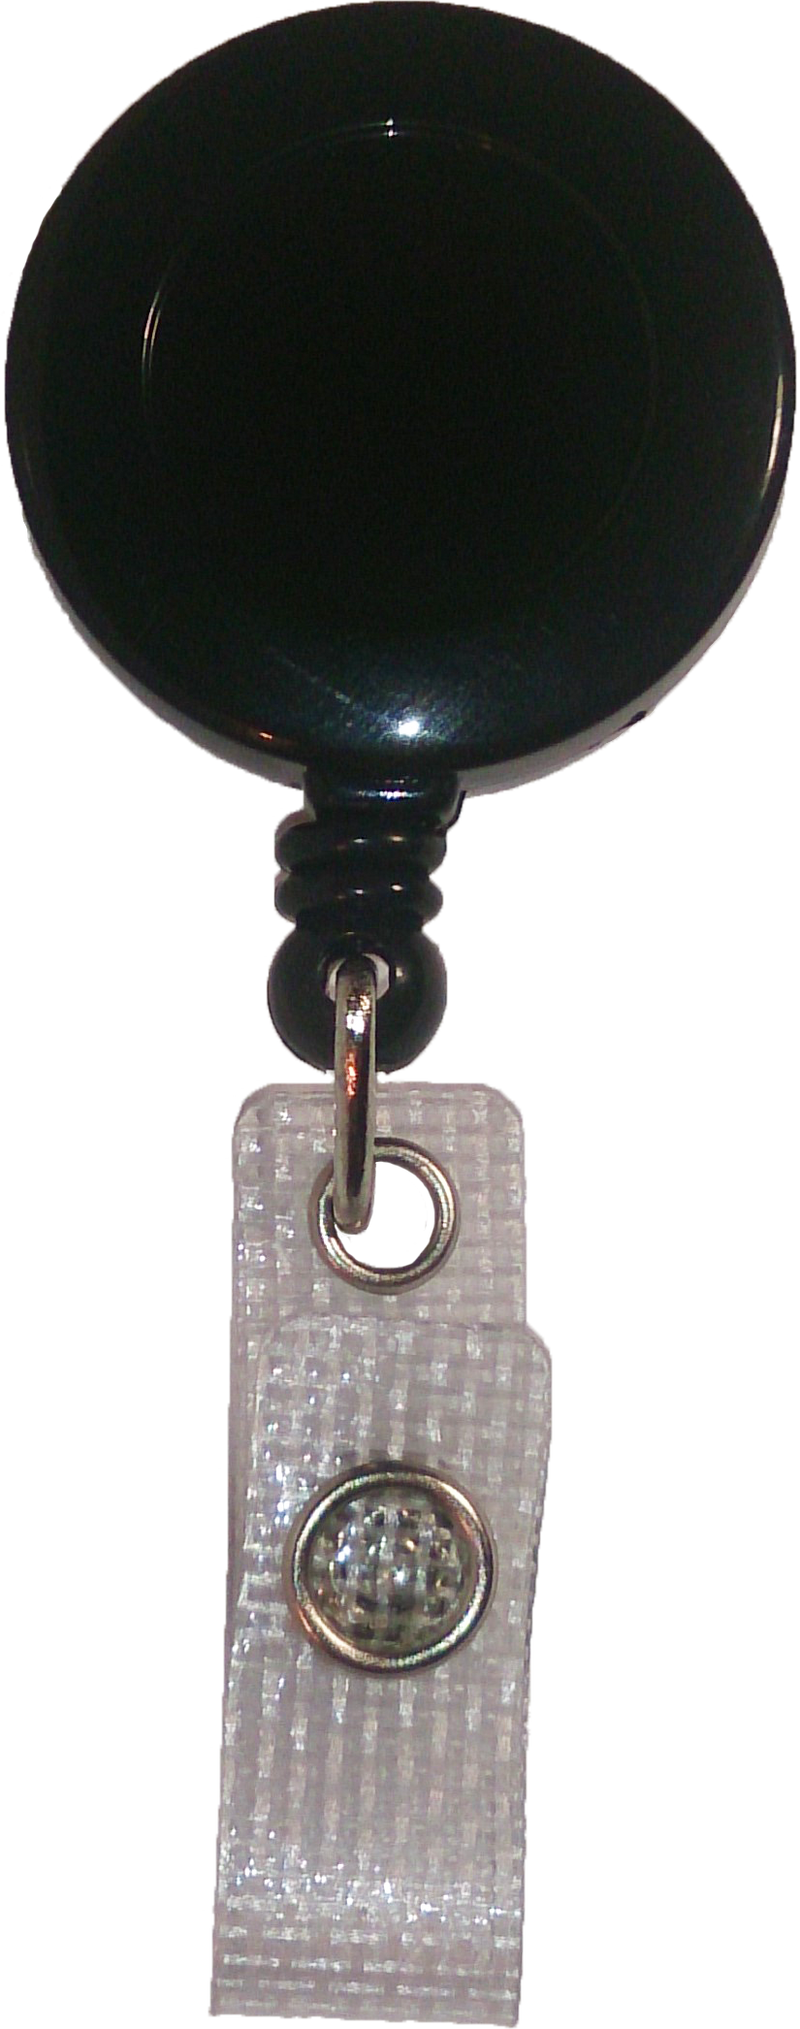 Black zinger with reinforced vinyl strap and slide belt clip.